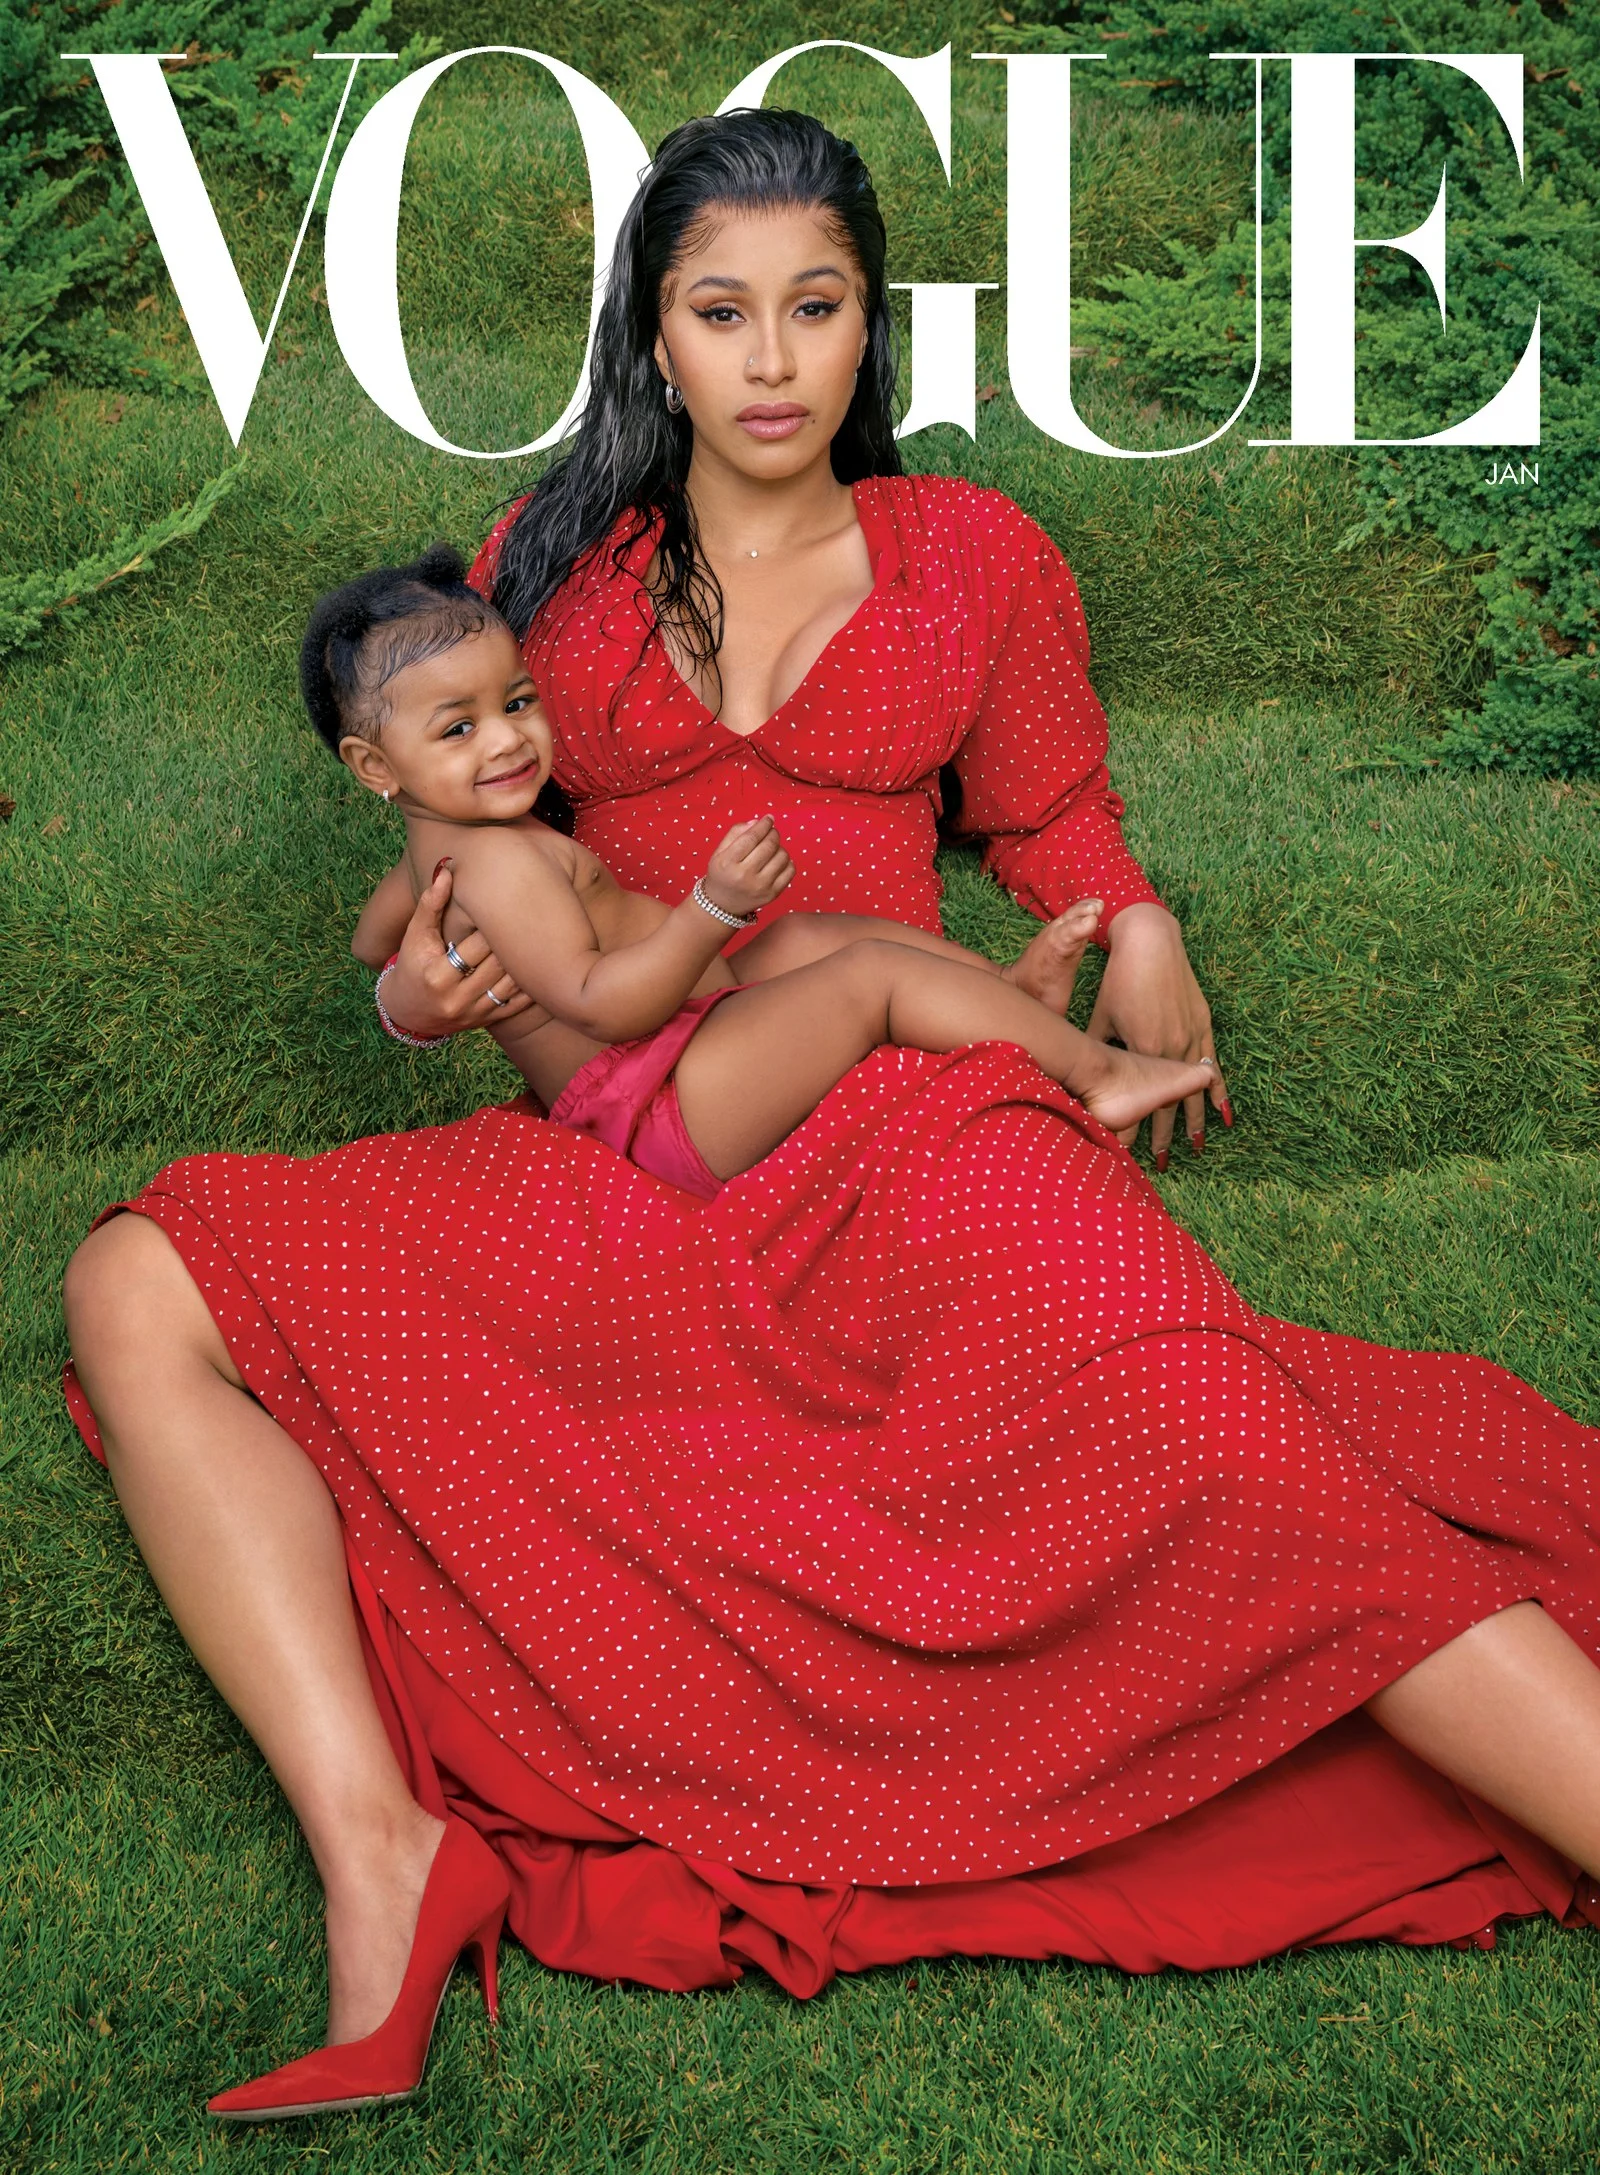 Карди Би с дочкой украсила обложку Vogue и рассказала о своем непростом браке - фото 461044